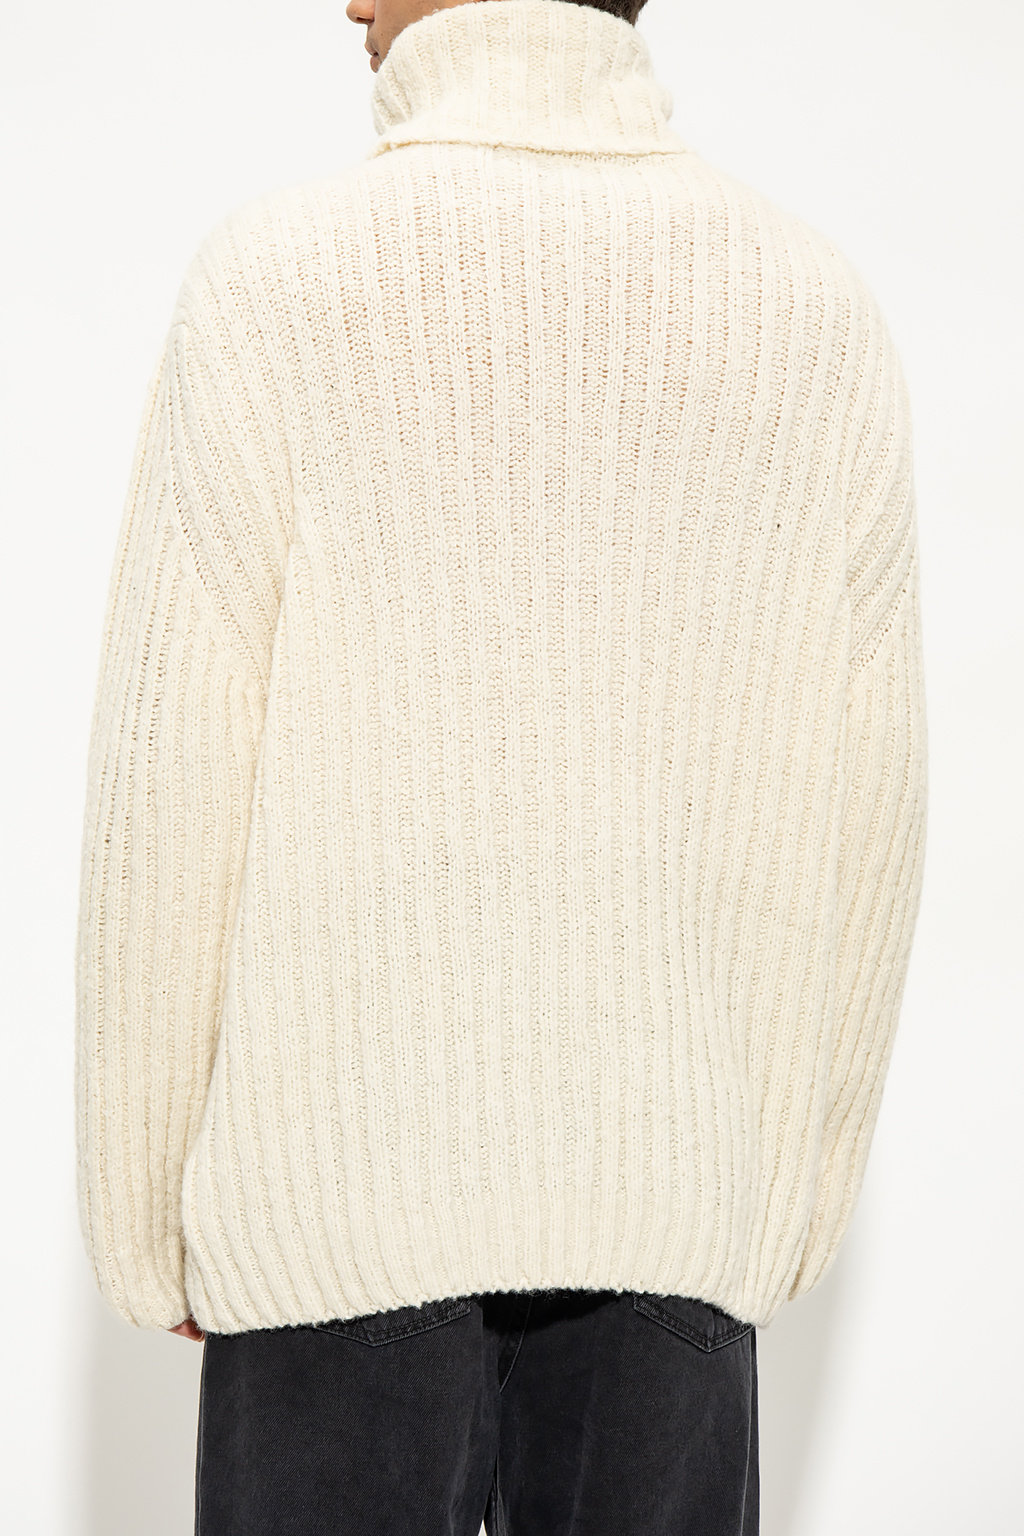 Etudes Eleventy half-zip knit sweater